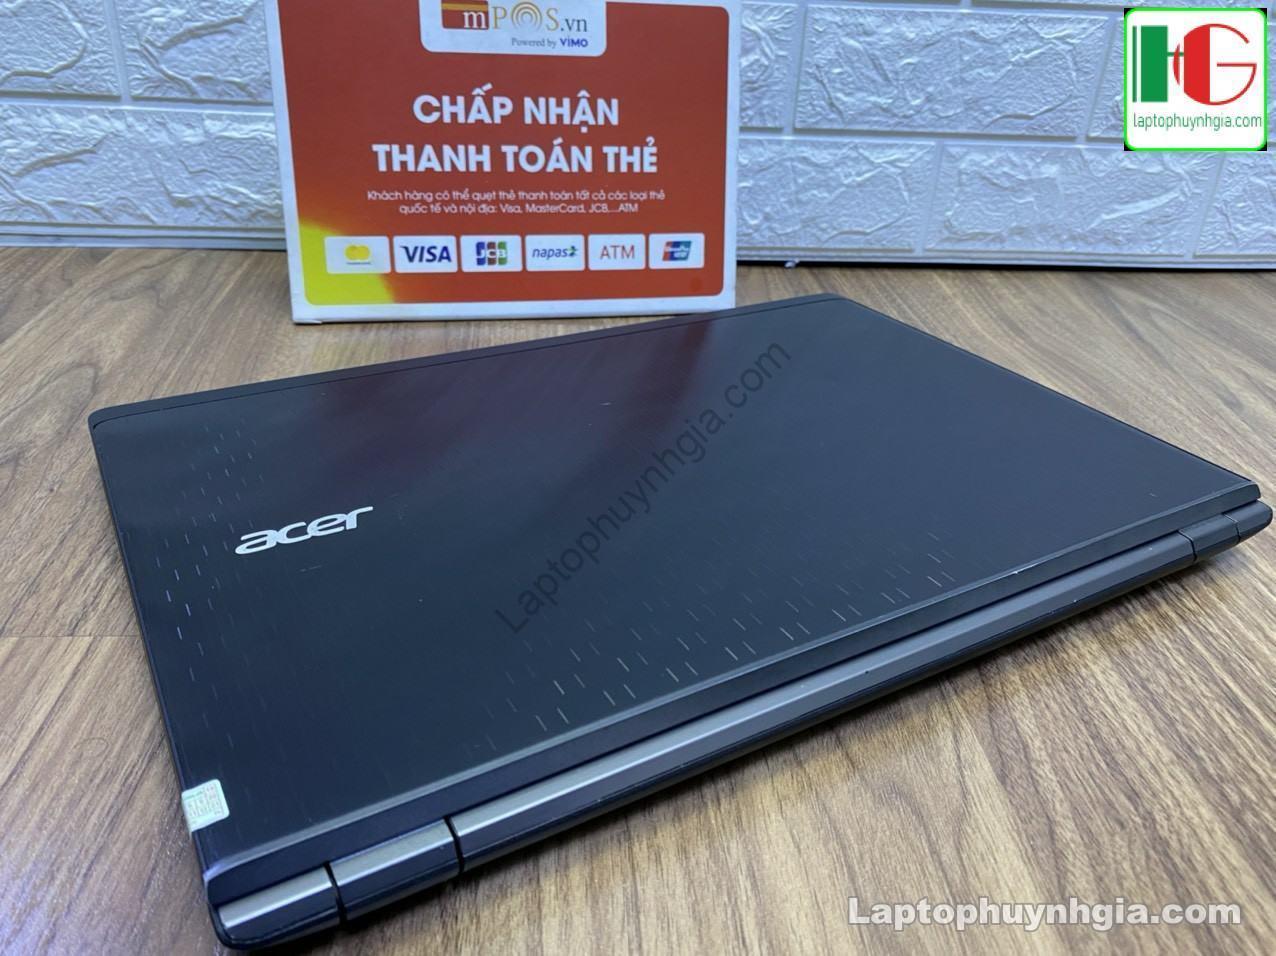 Acer V3 575 I5 6200u 4G HDD 500G LCD 15 Laptophuynhgia.com 5 - Laptop Cũ Bình Dương Huỳnh Gia